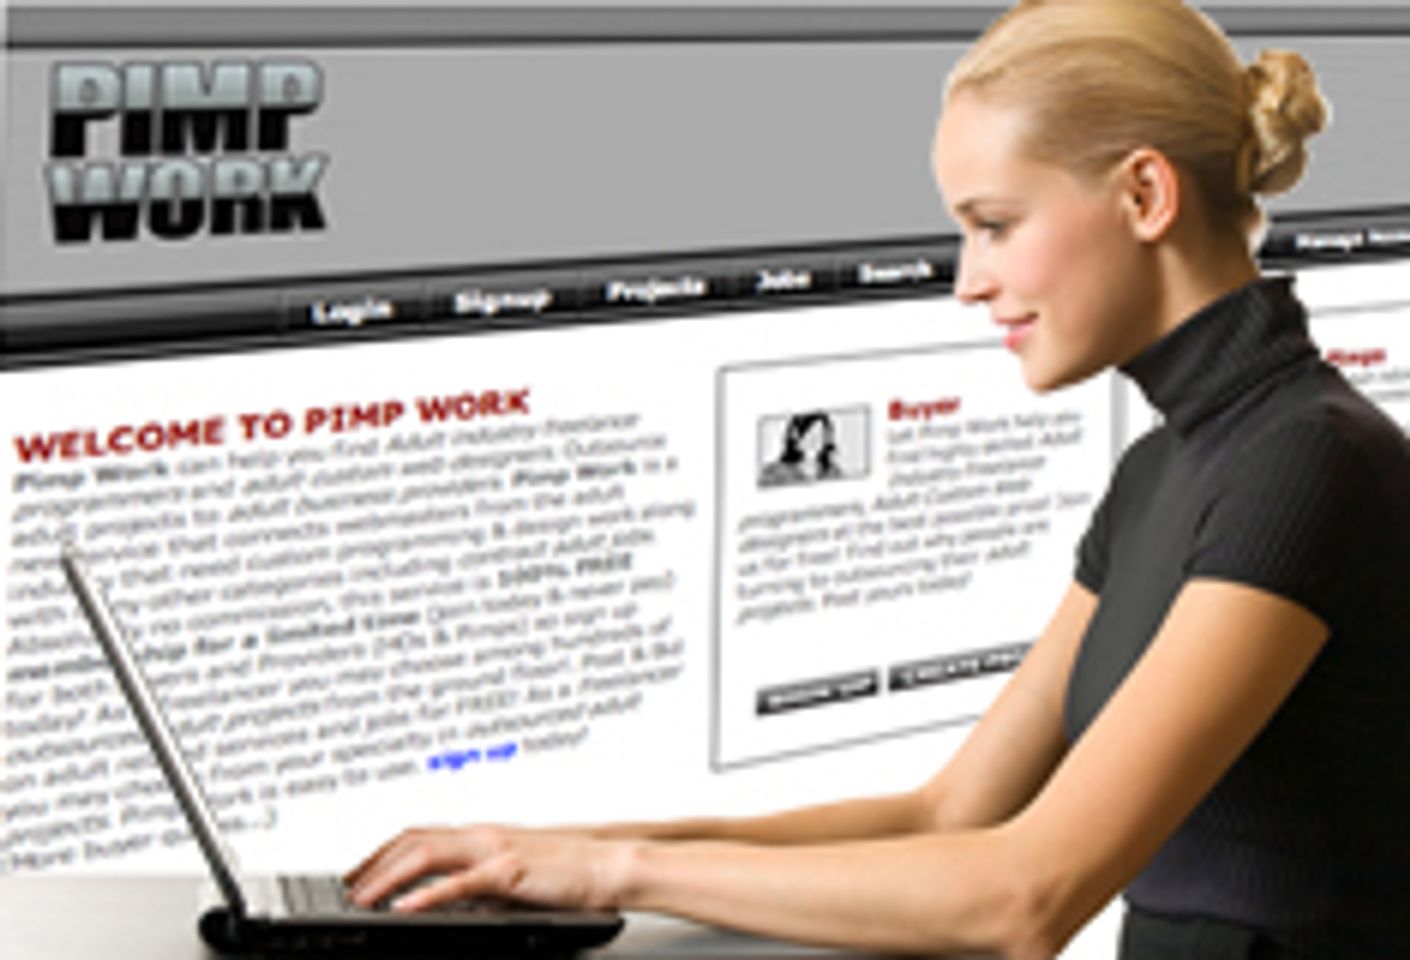 Adult Freelance Marketplace PimpWork.com Launches